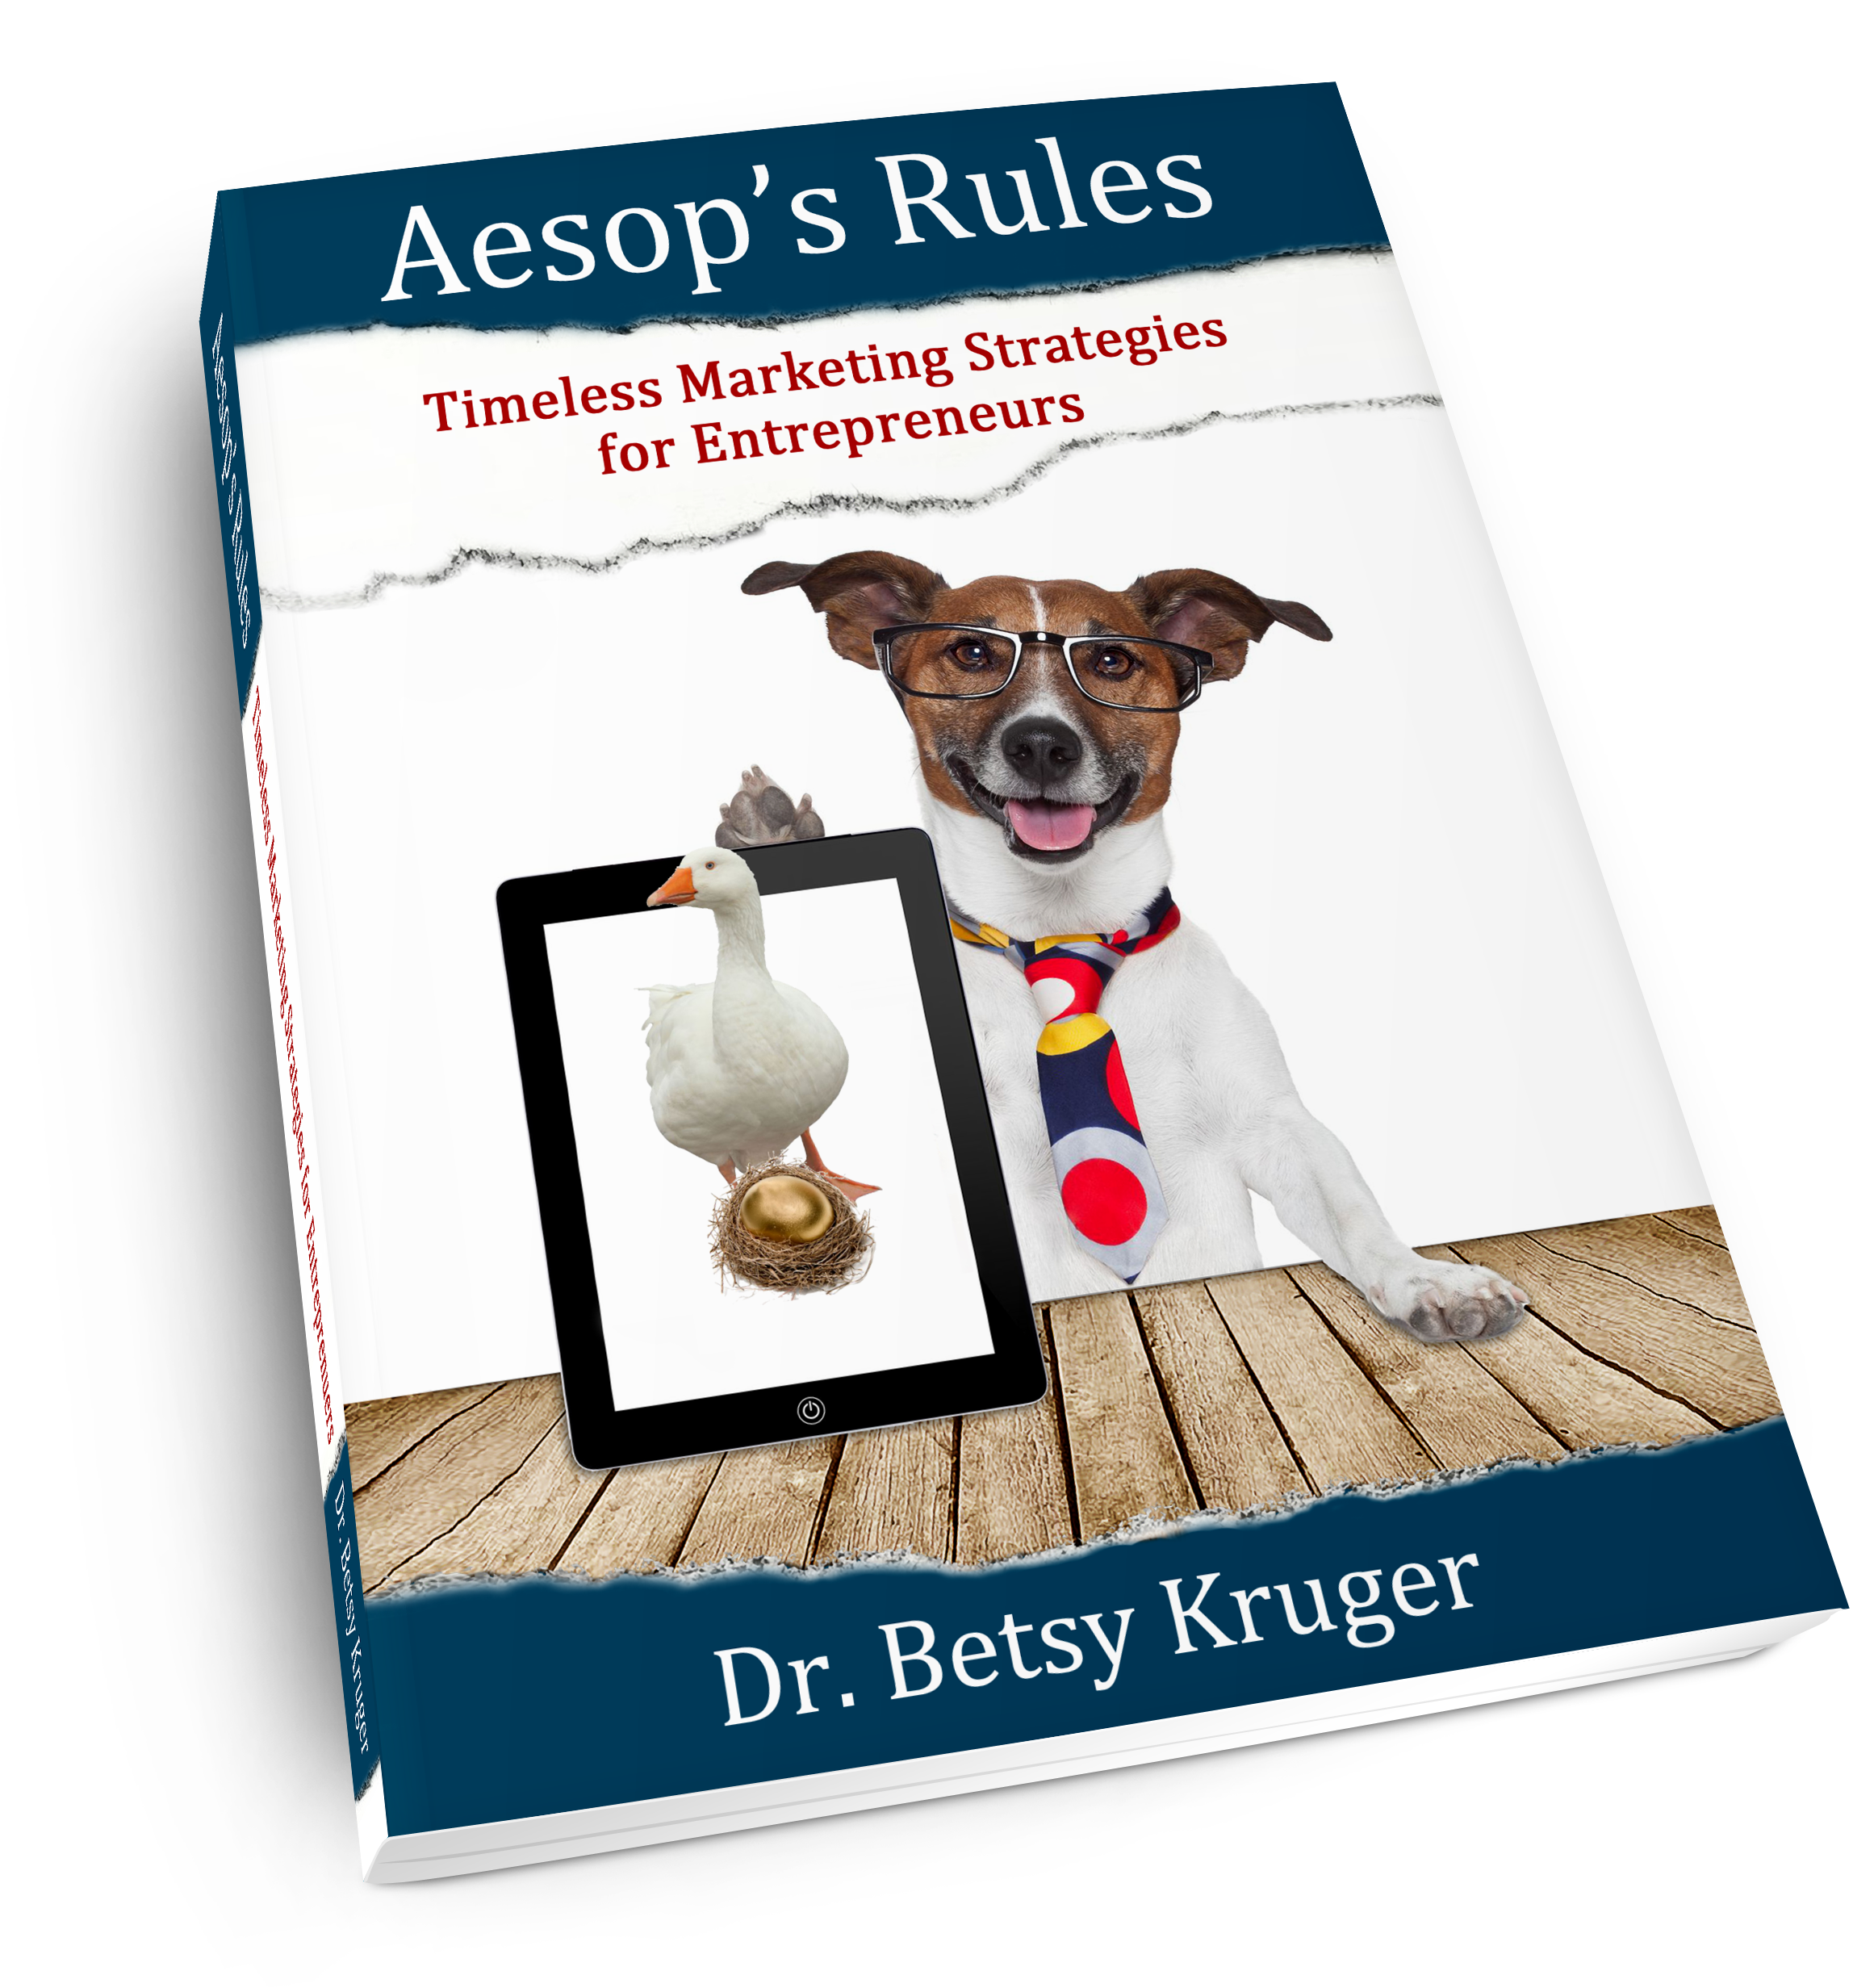 "Aesop's Rules: Timeless Marketing Strategies for Entrepreneurs"